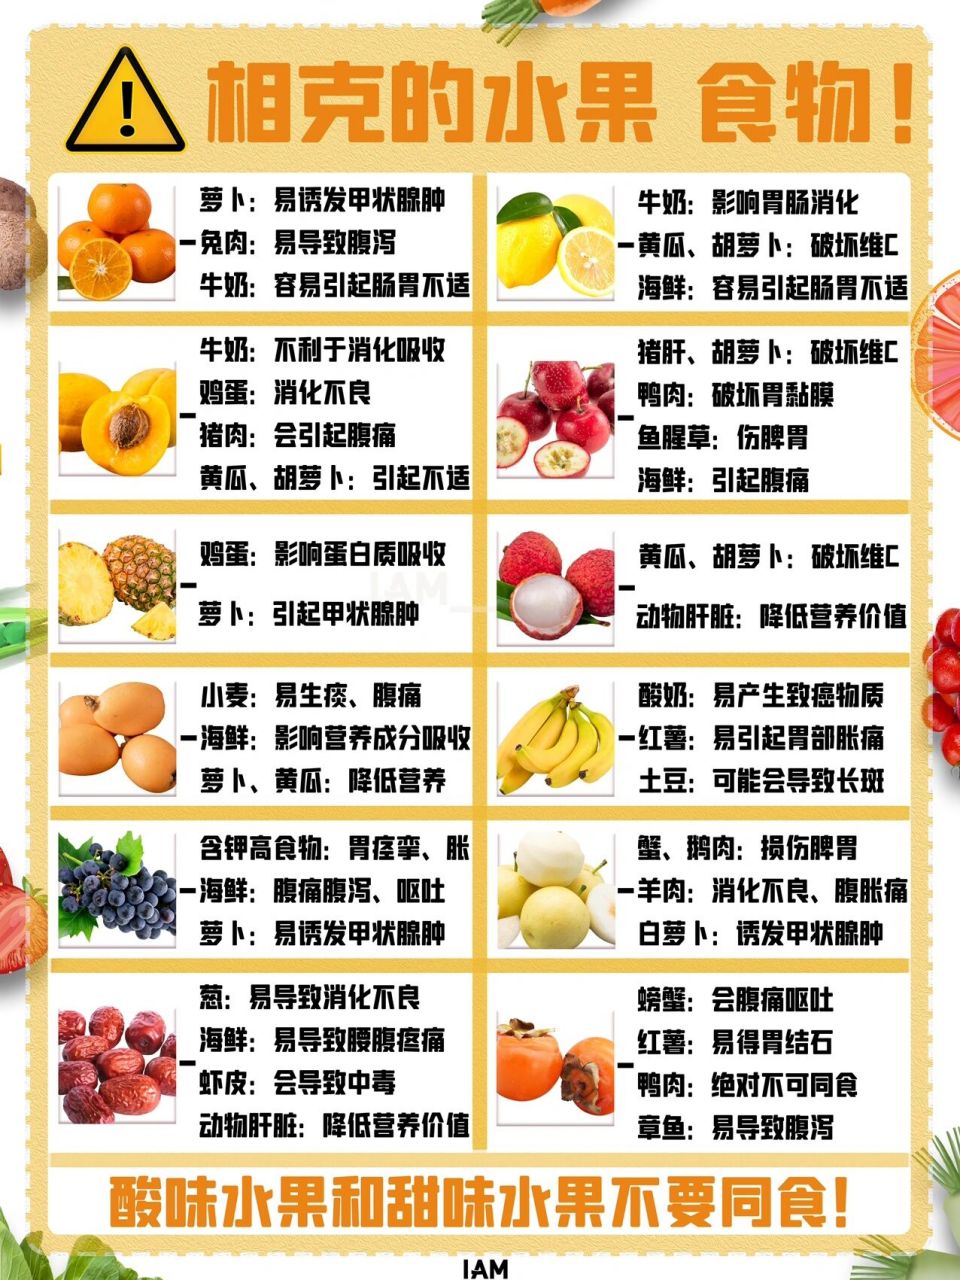 酸性水果表酸碱性图片